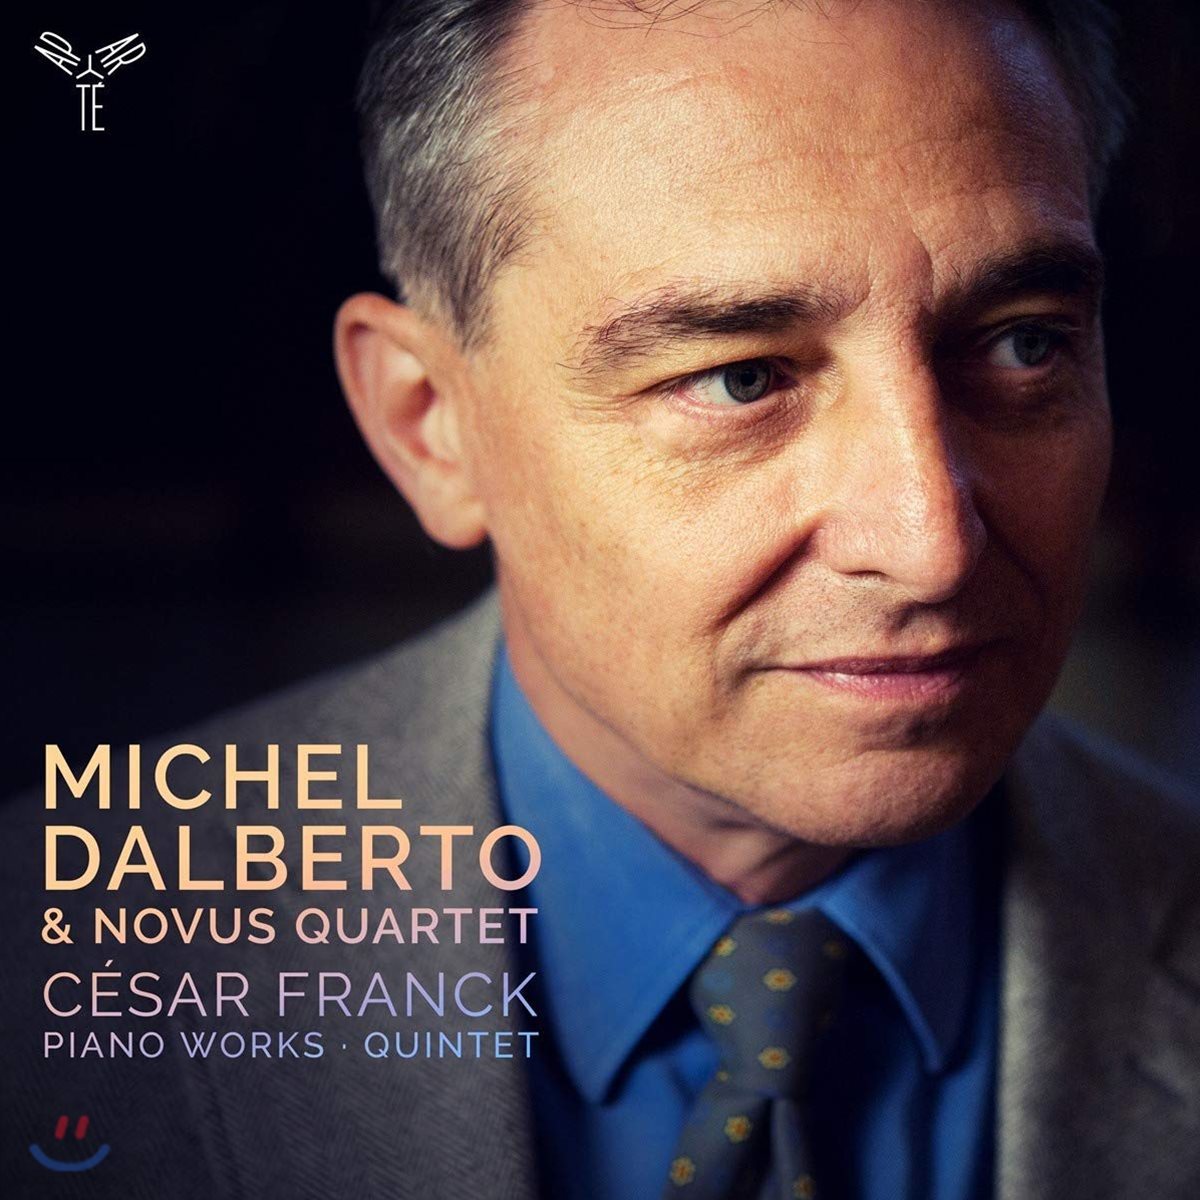 노부스 콰르텟 / Michel Dalberto 프랑크: 피아노 솔로 작품과 피아노 오중주 (Franck: Piano Works, Quintet)